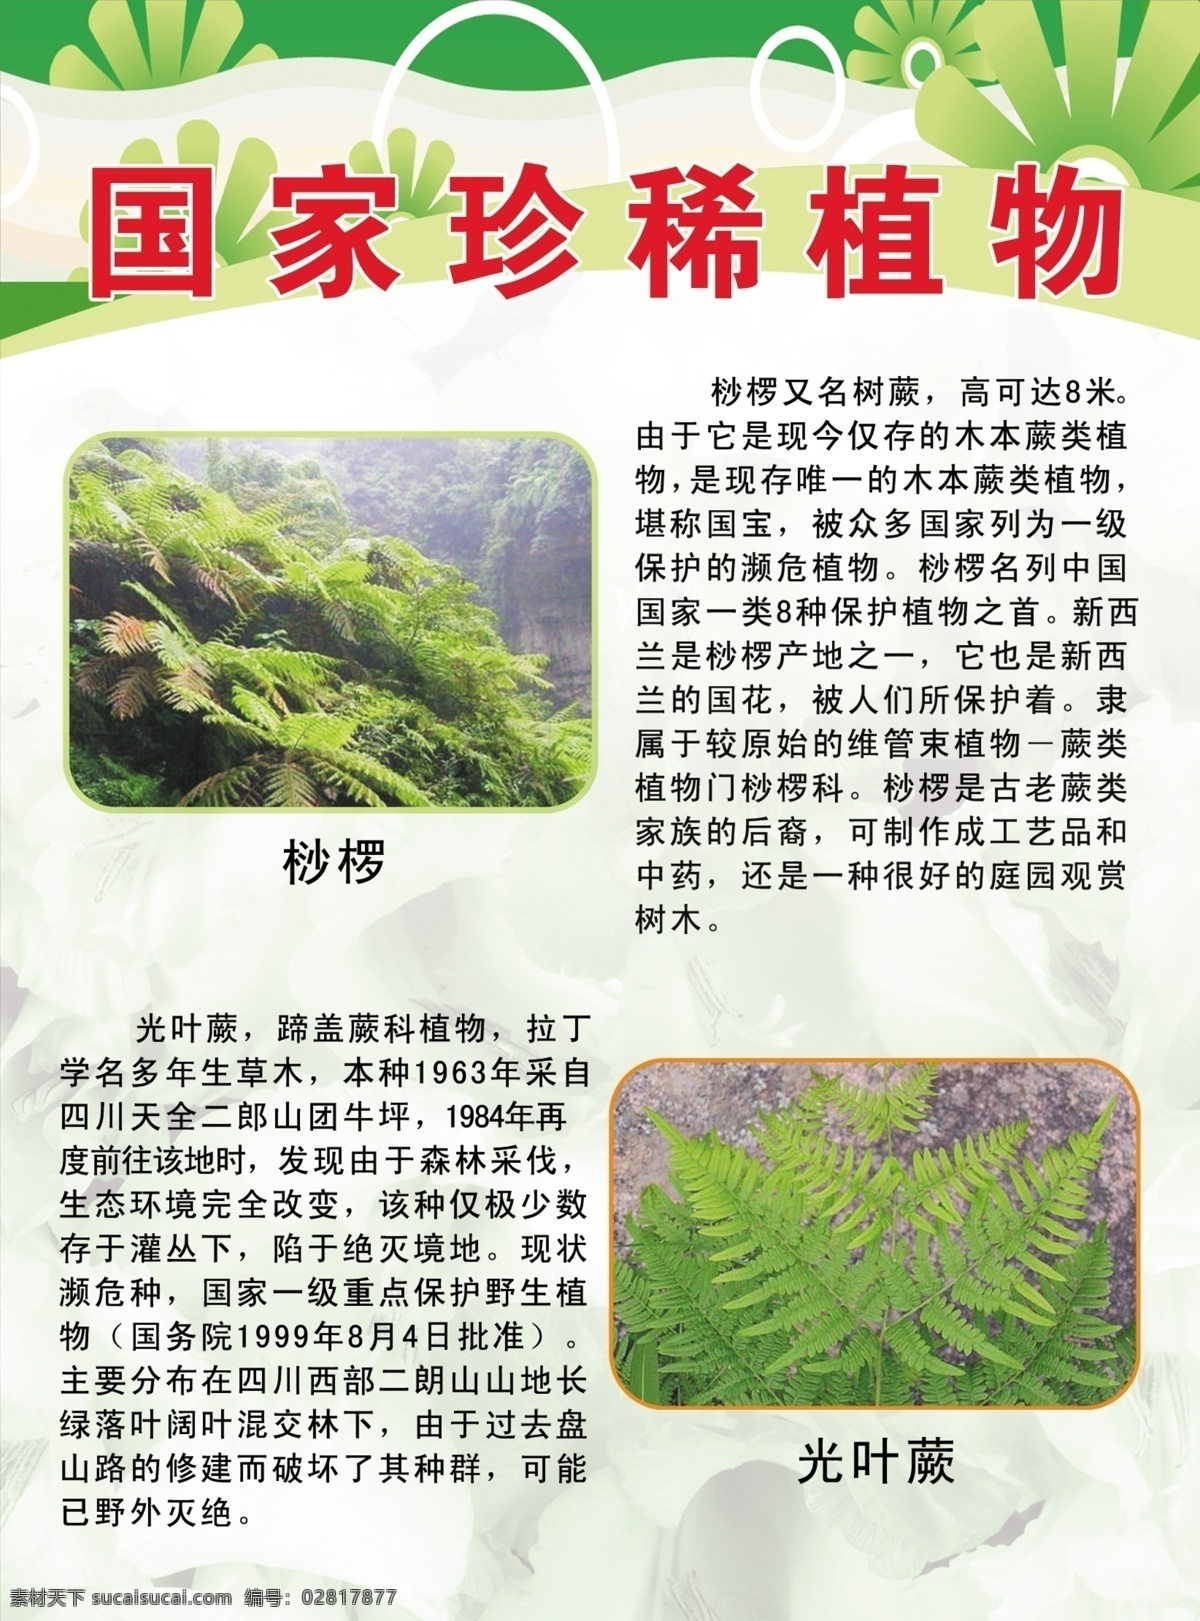 国家珍稀植物 桫椤 光叶蕨 绿色展板 学校展板 校园文化 珍稀植物 展板模板 广告设计模板 源文件